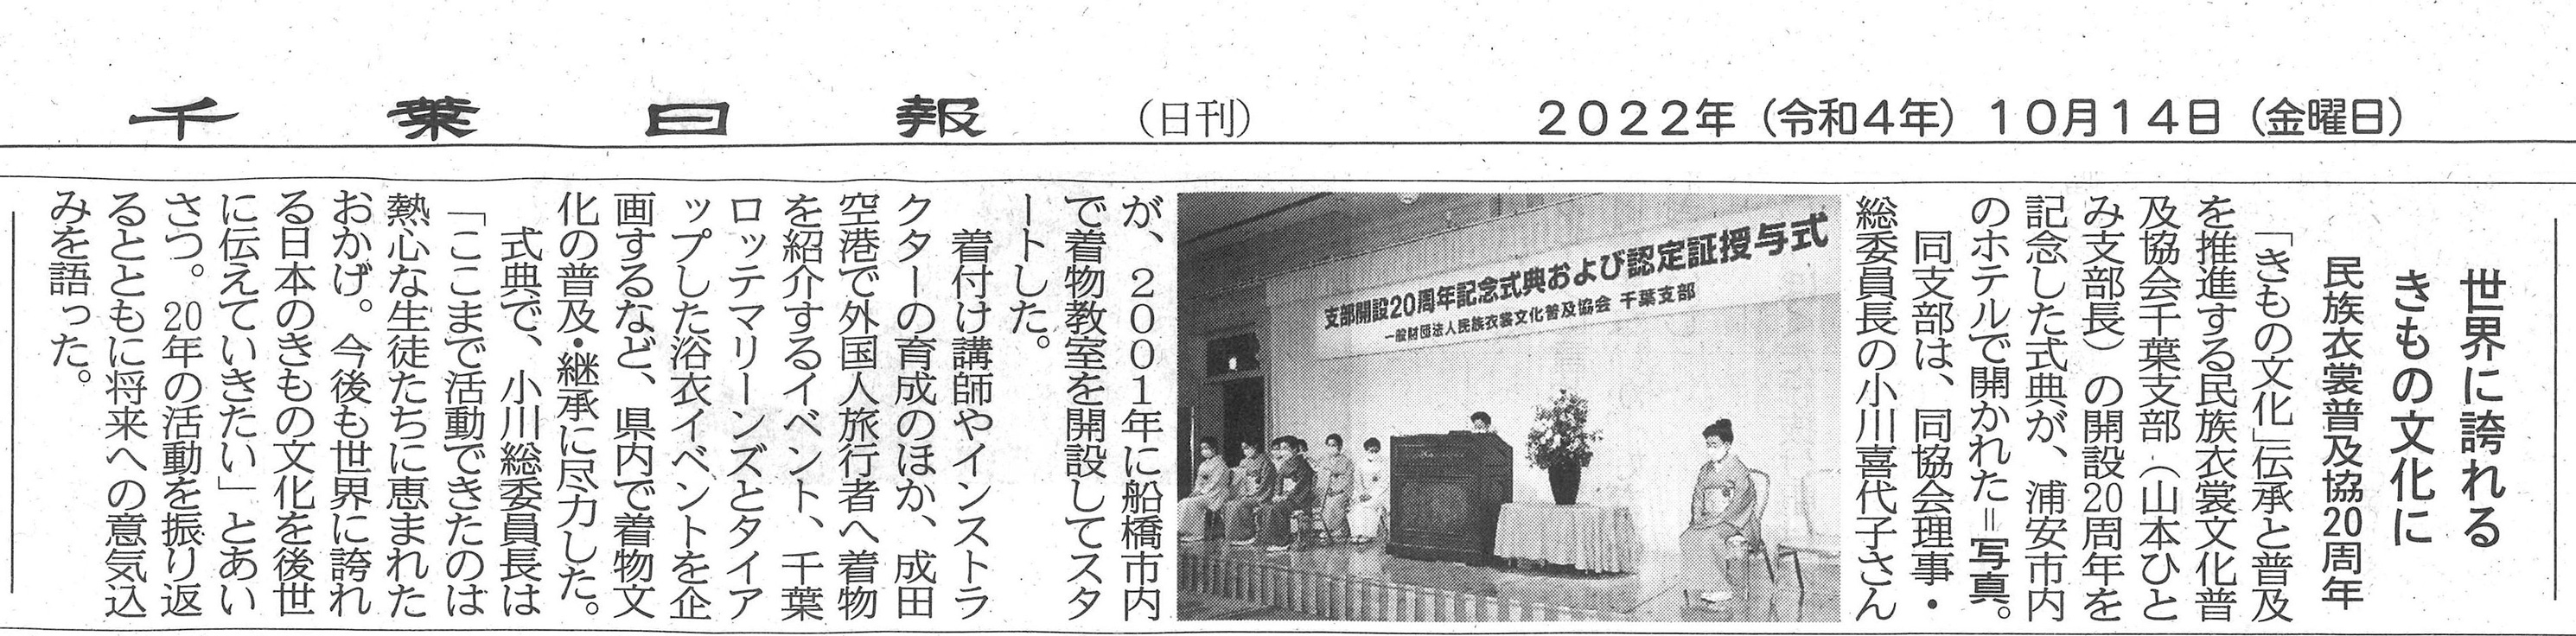 「千葉支部開設20周年」産経新聞の取材記事掲載